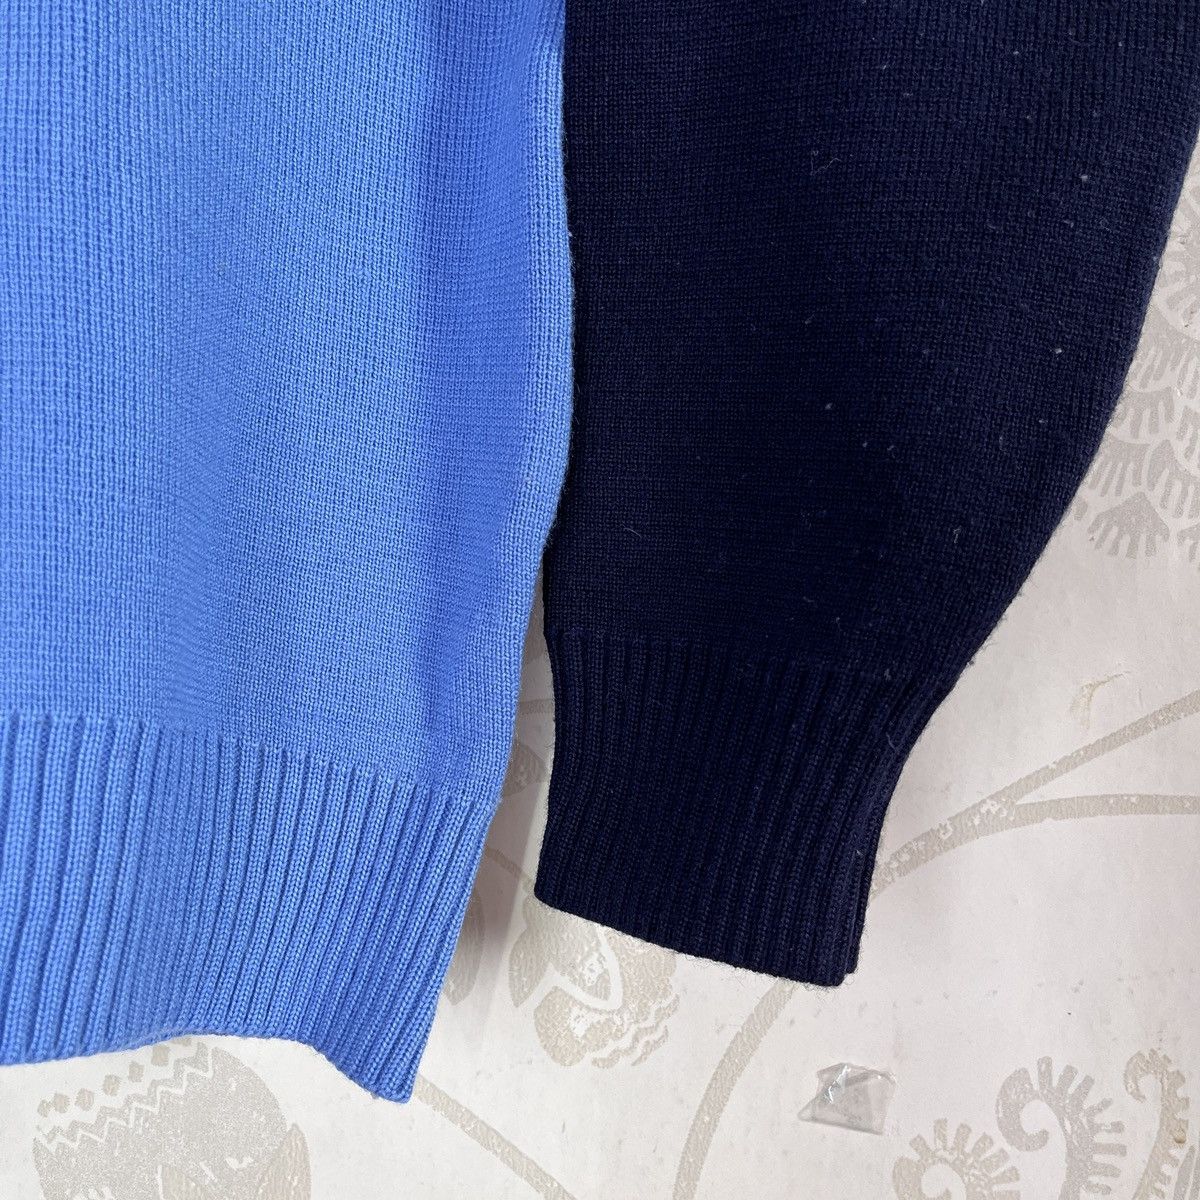 Japan Blue - Vintage Blue Sweater Knitwear Japan - 8